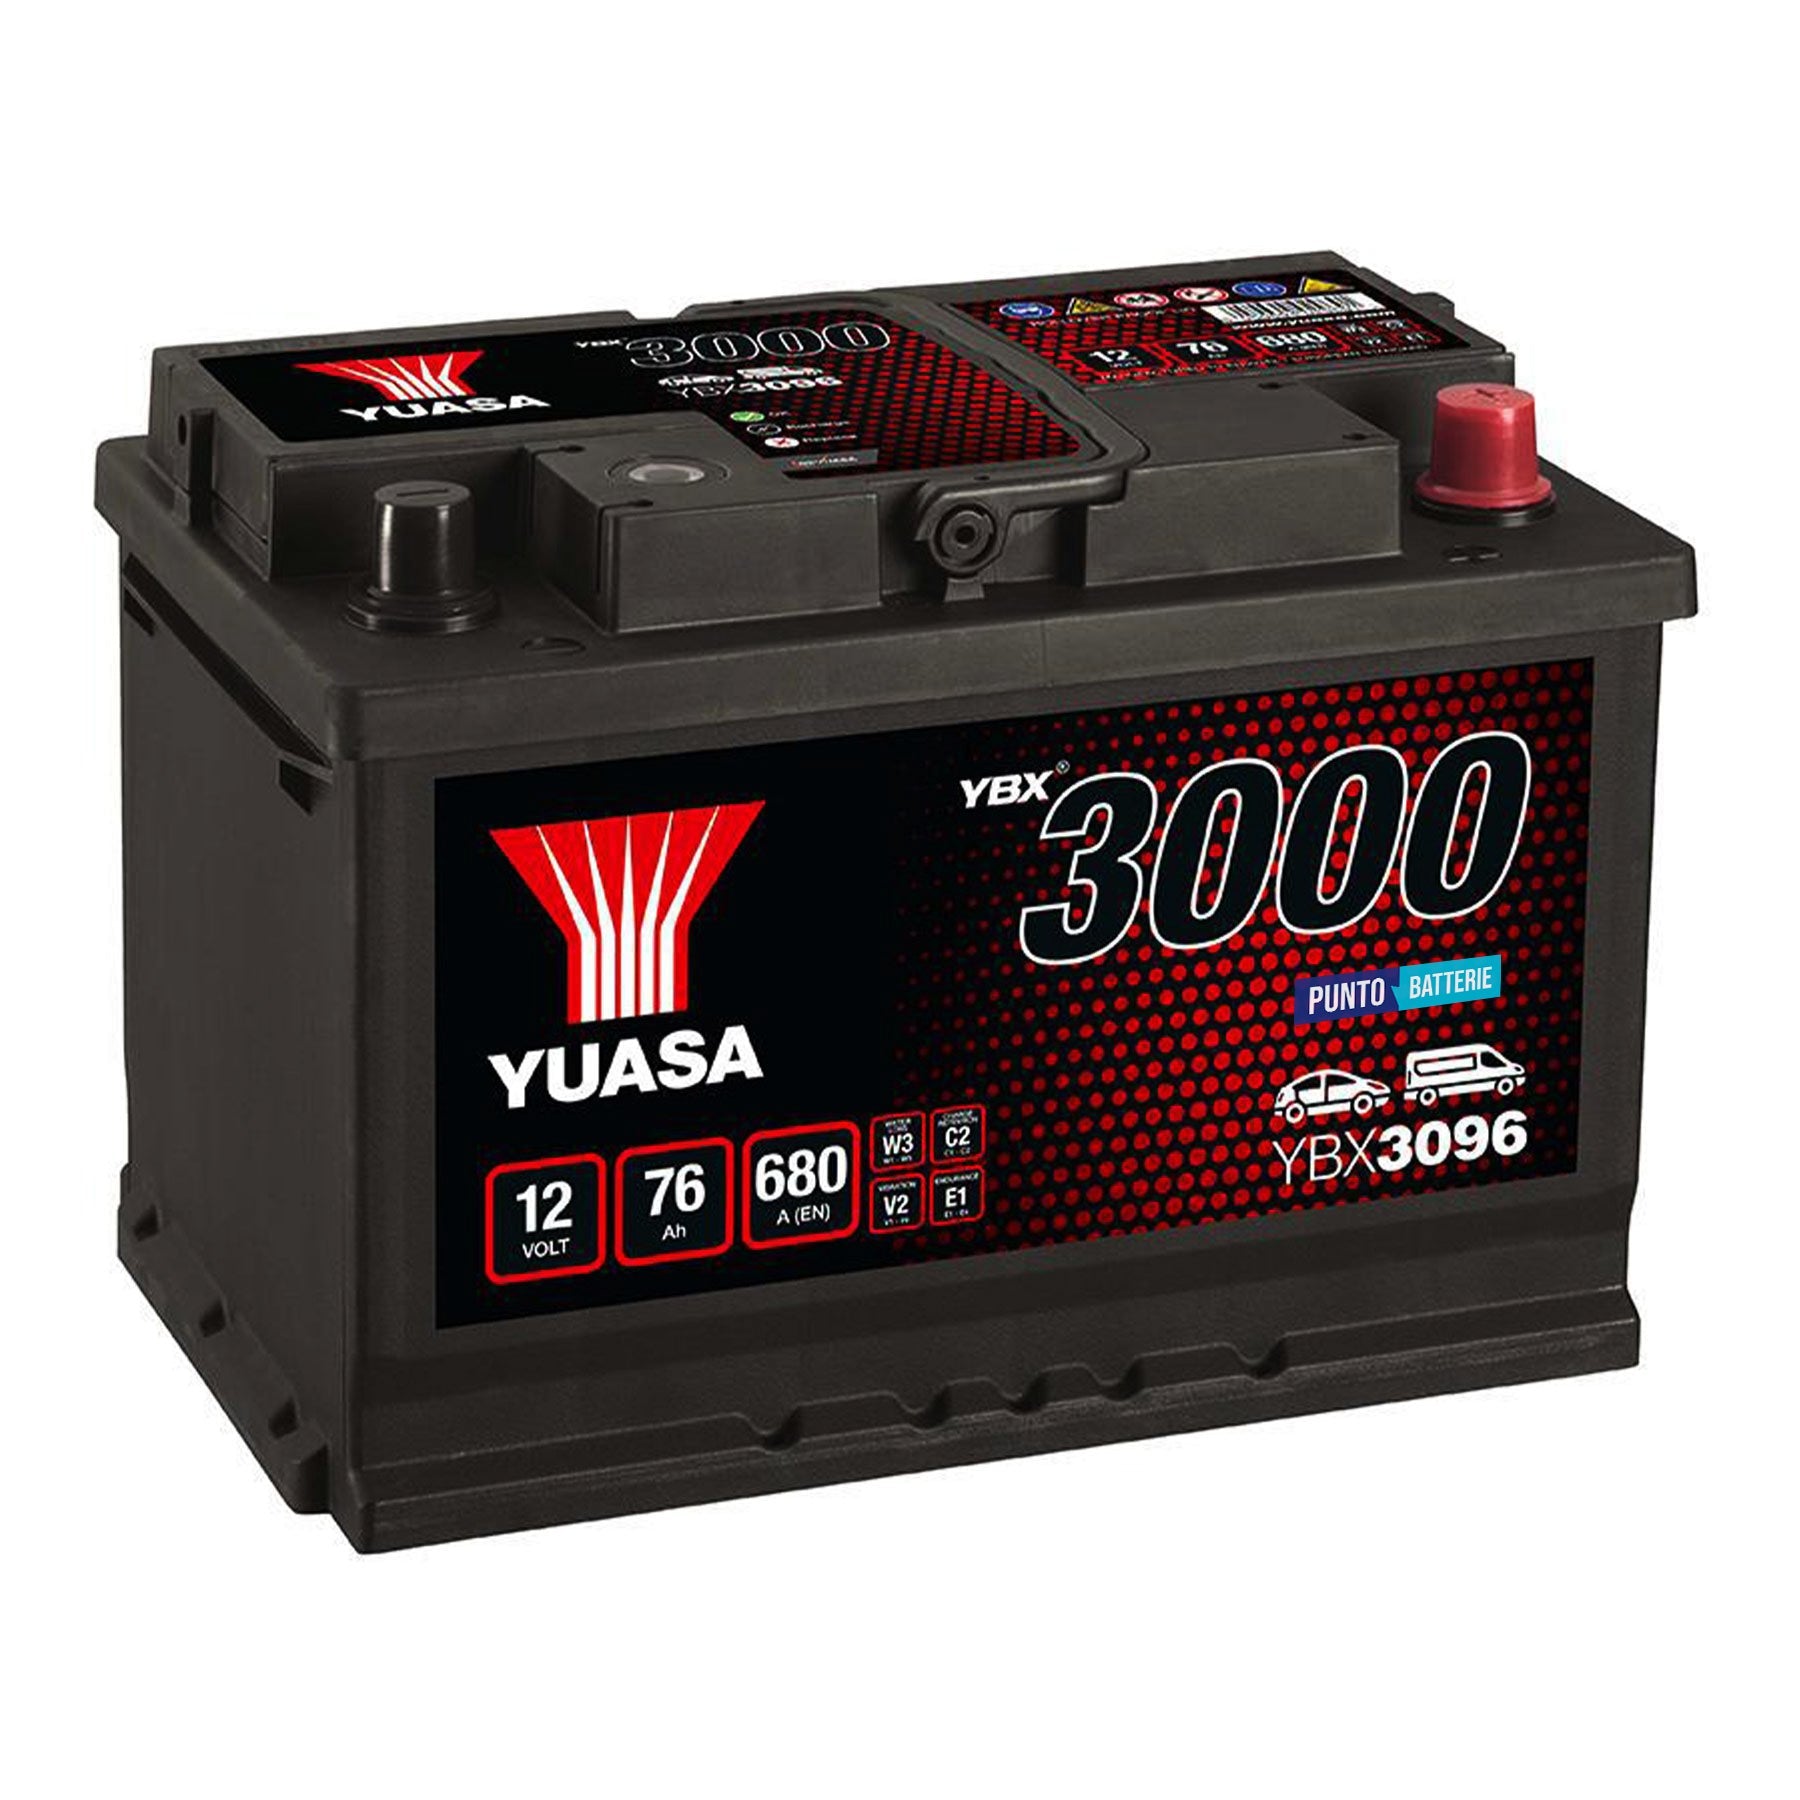 Batteria originale Yuasa YBX3000 YBX3096, dimensioni 278 x 175 x 190, polo positivo a destra, 12 volt, 76 amperora, 680 ampere. Batteria per auto e veicoli leggeri.